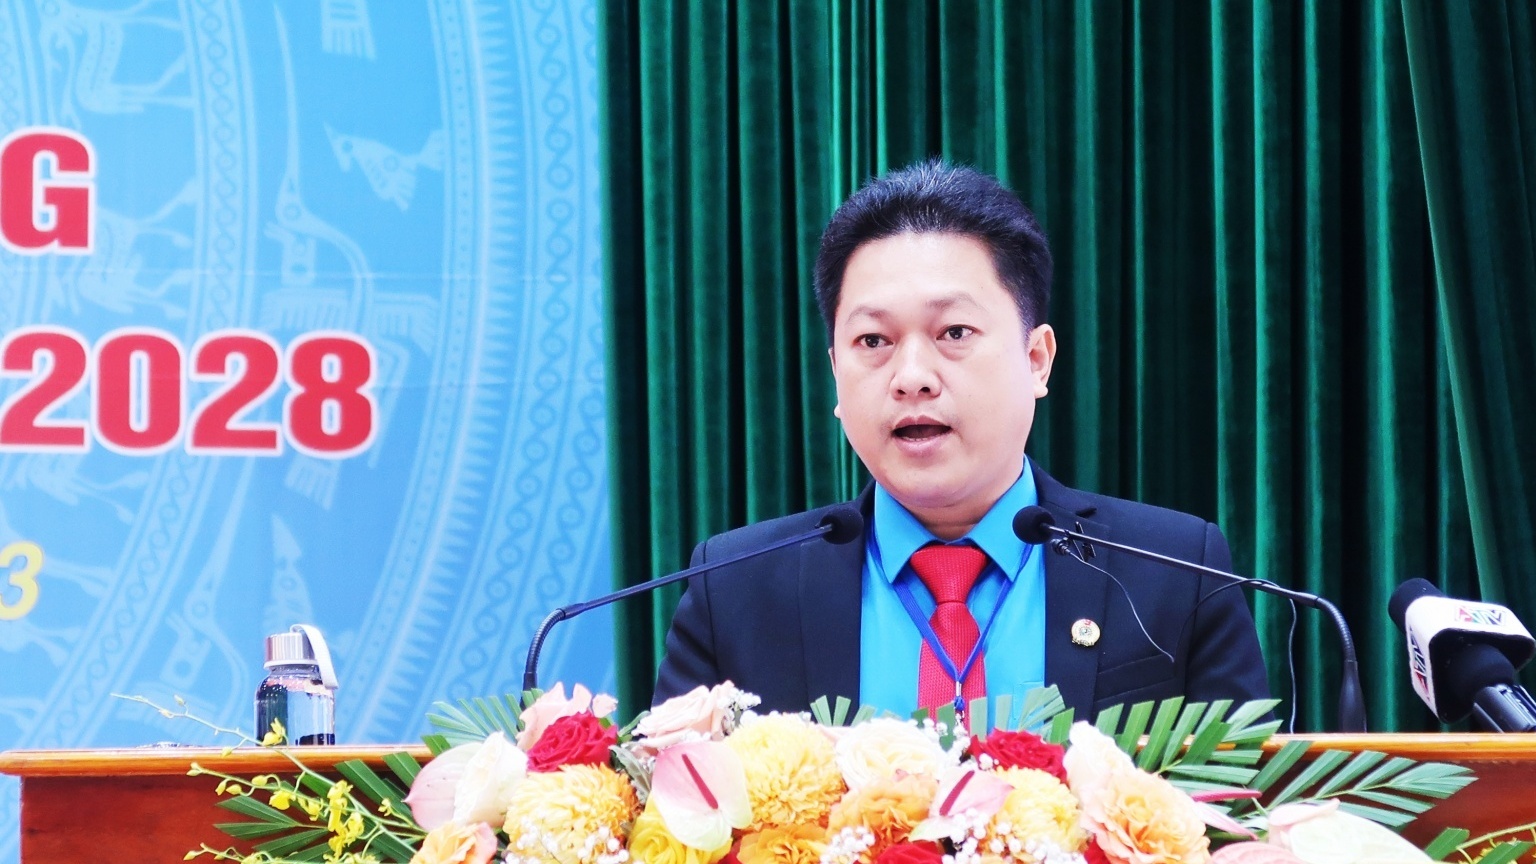 Đồng chí Lâm Thành Sĩ được bầu giữ chức Chủ tịch LĐLĐ tỉnh An Giang